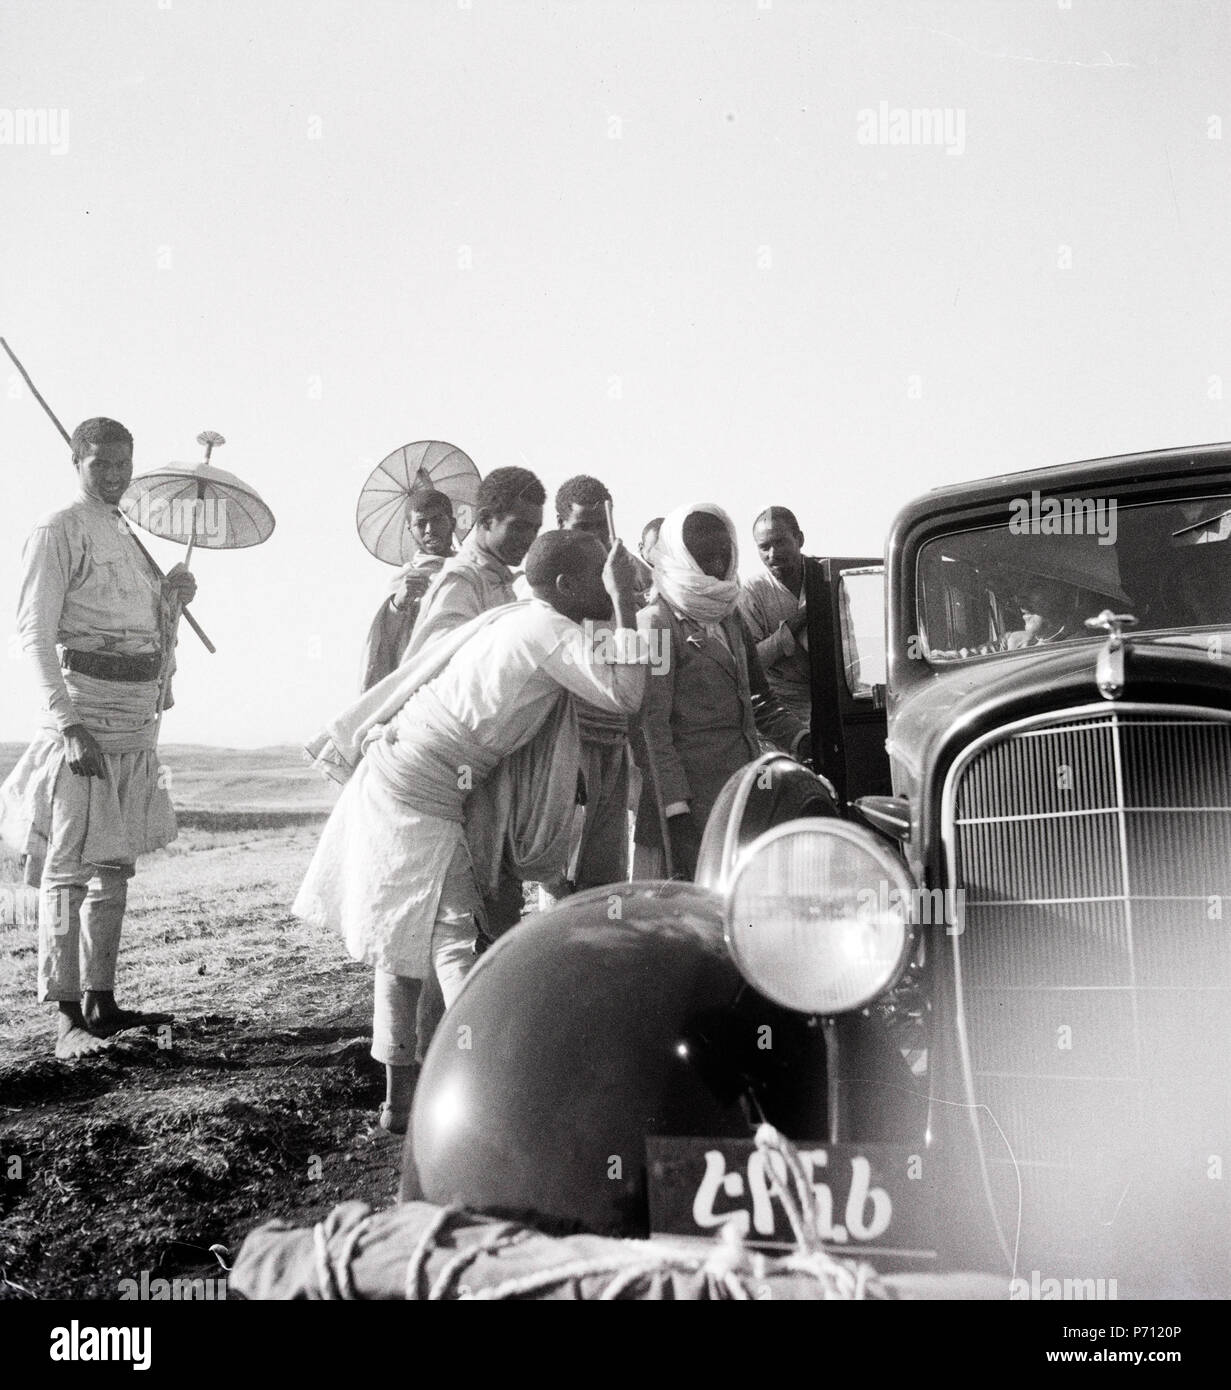 41 ETH-bib-Abessinier neben einem Auto-Abessinienflug 1934-LB MH02-22-0284 Banque D'Images